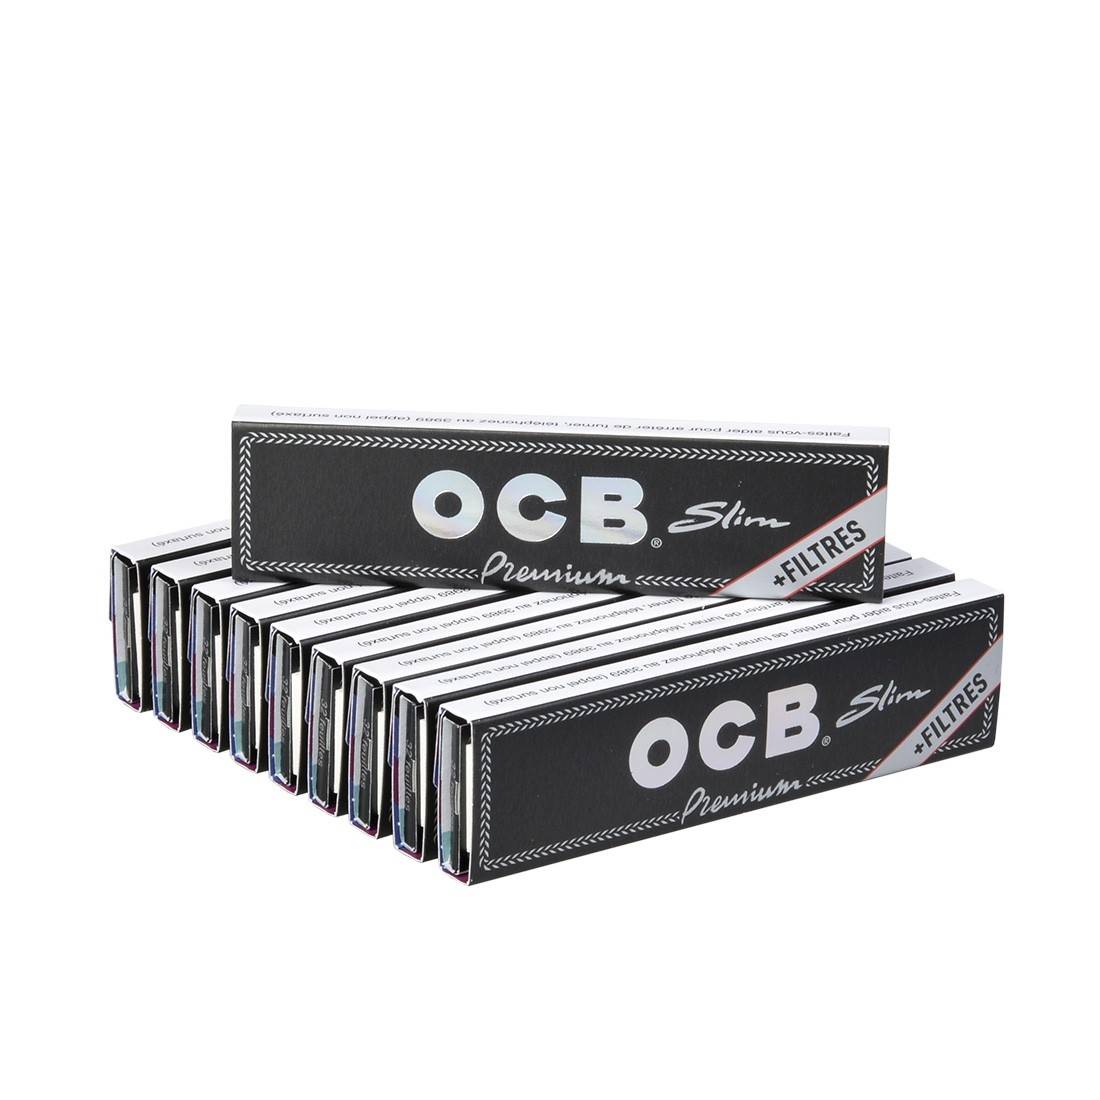 achat feuilles ocb + filtres, OCB slim et cartons, Feuilles grand format